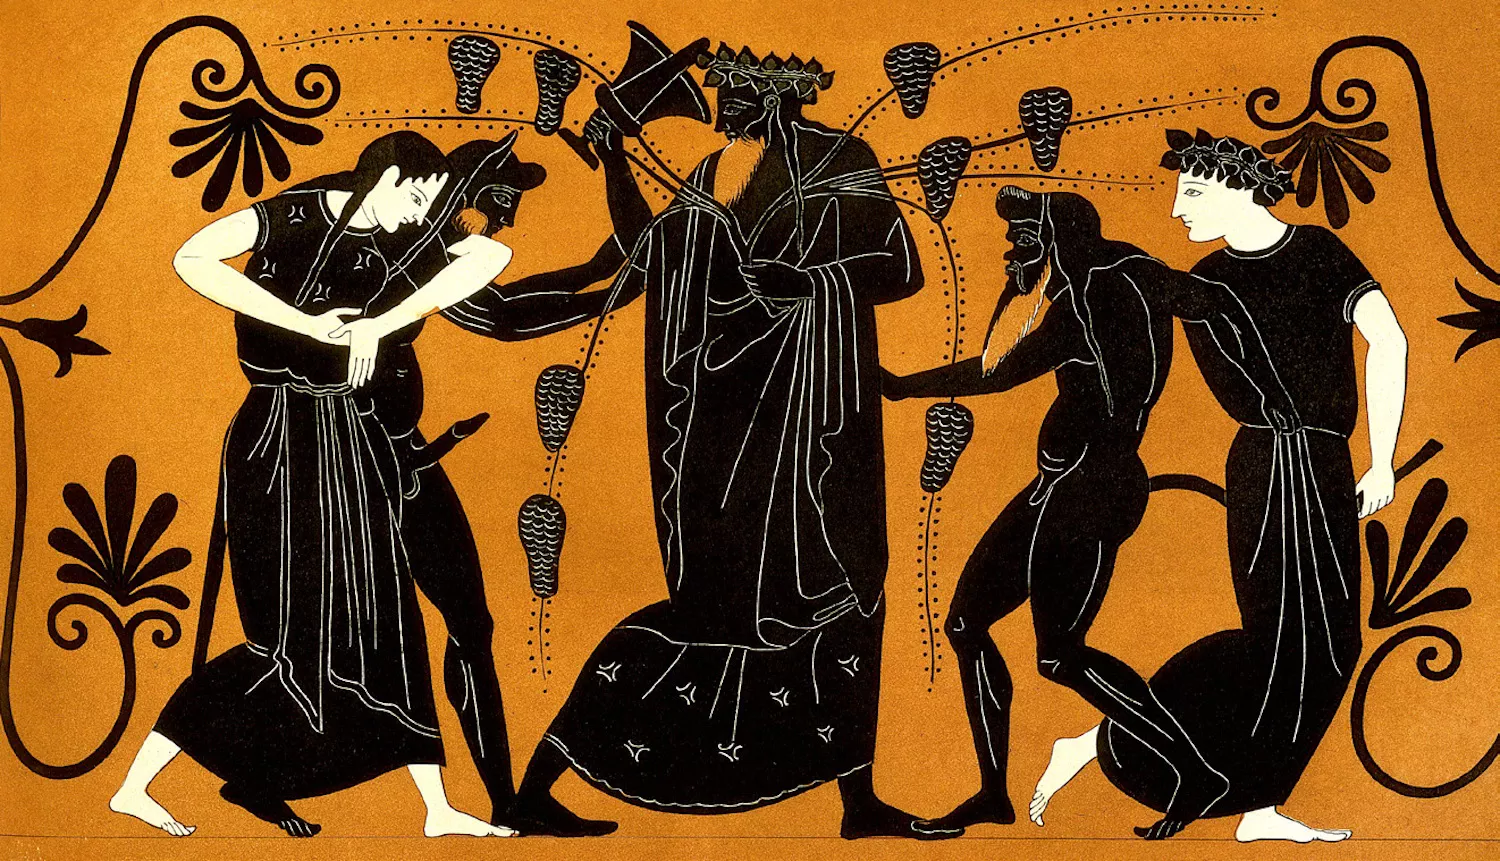 En aquesta pintura, Dionís, déu del vi, és envoltat de vinyes, sàtirs (ésser mitològics) i mènades (nimfes)